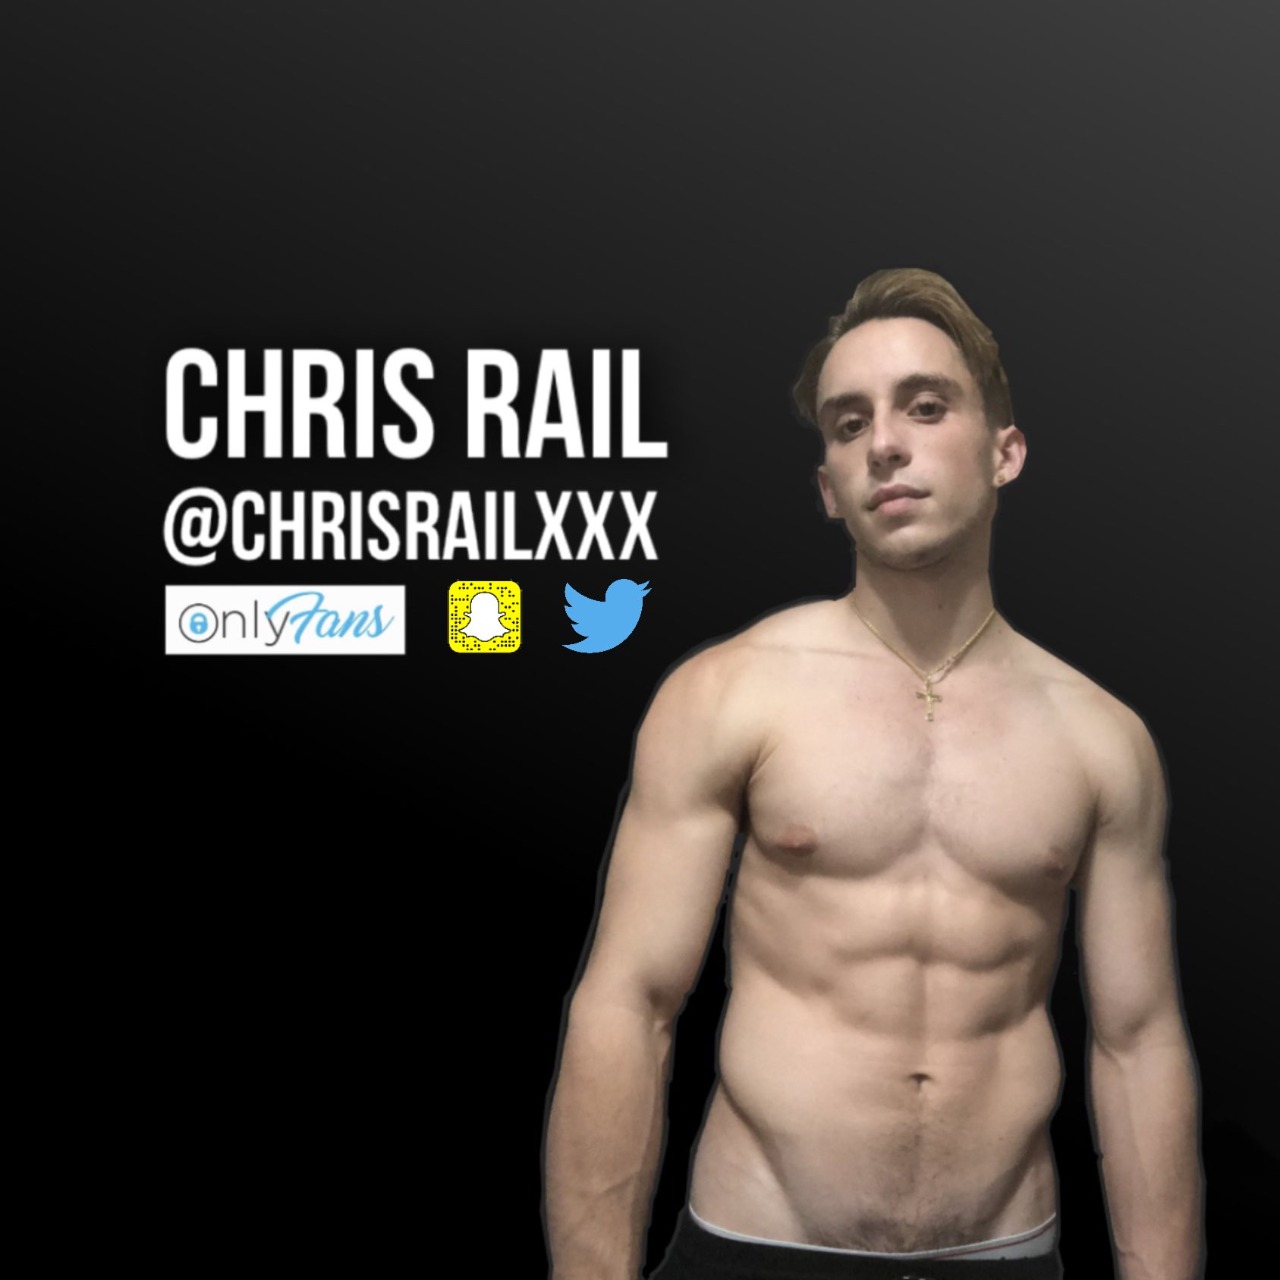 Chris rail solo